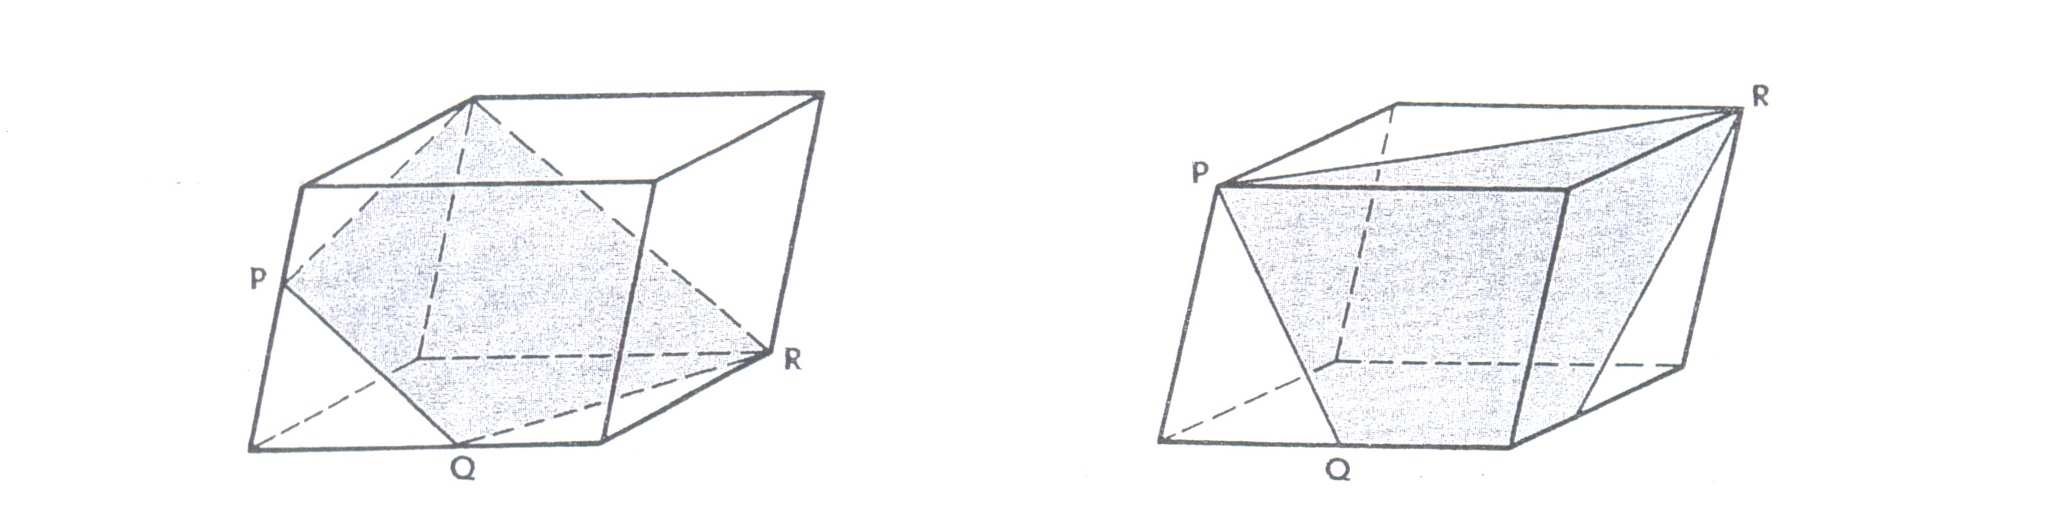 Урок по геометрии на тему: Задачи на построение сечений, 10 класс